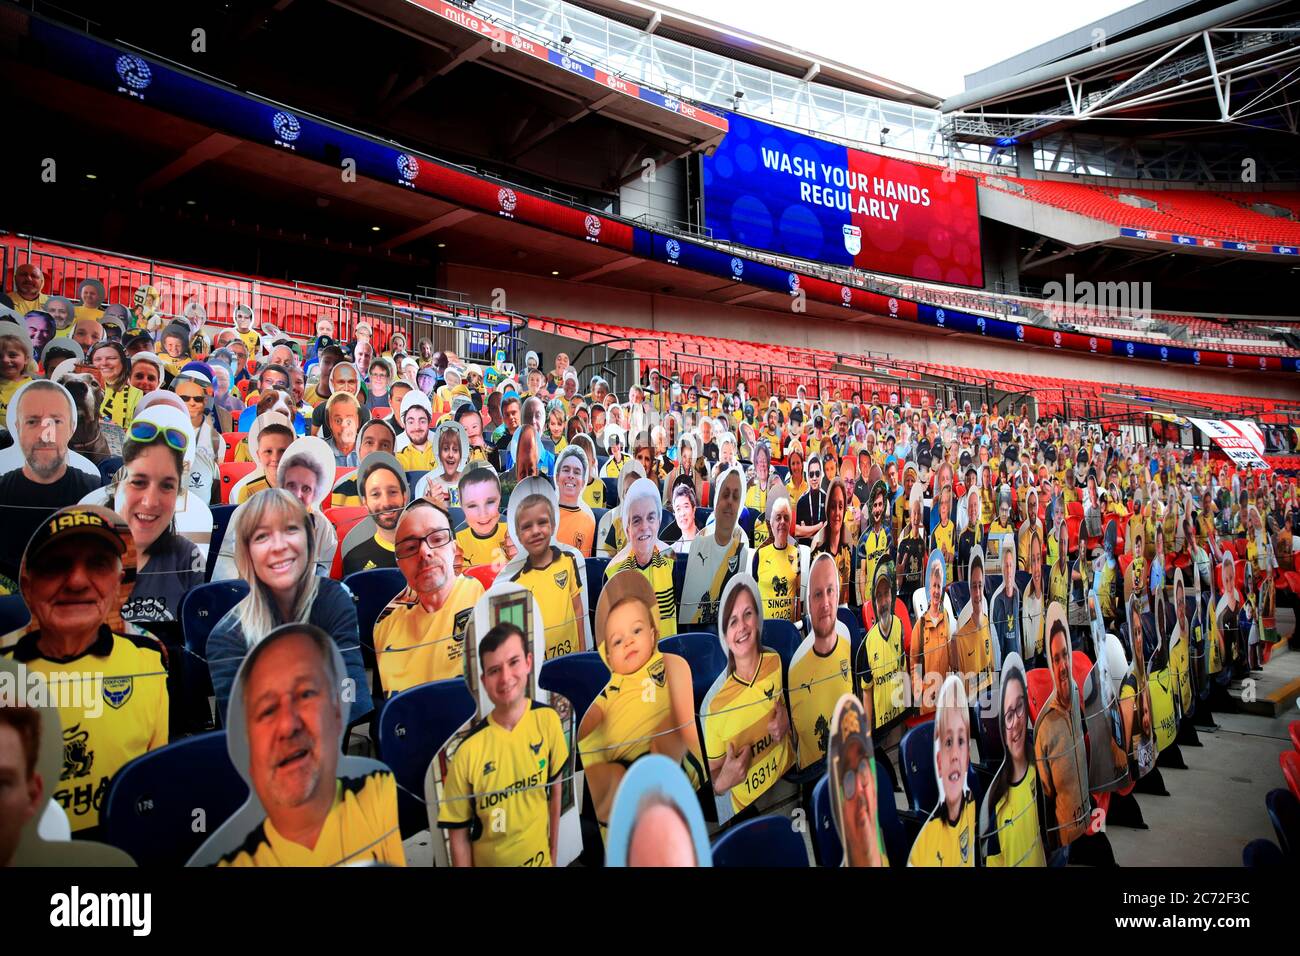 Una visione generale del taglio di cartone dei tifosi negli stand con messaggi su come prevenire la diffusione del coronavirus sul grande schermo prima della finale di gioco di Sky Bet League One al Wembley Stadium, Londra. Foto Stock